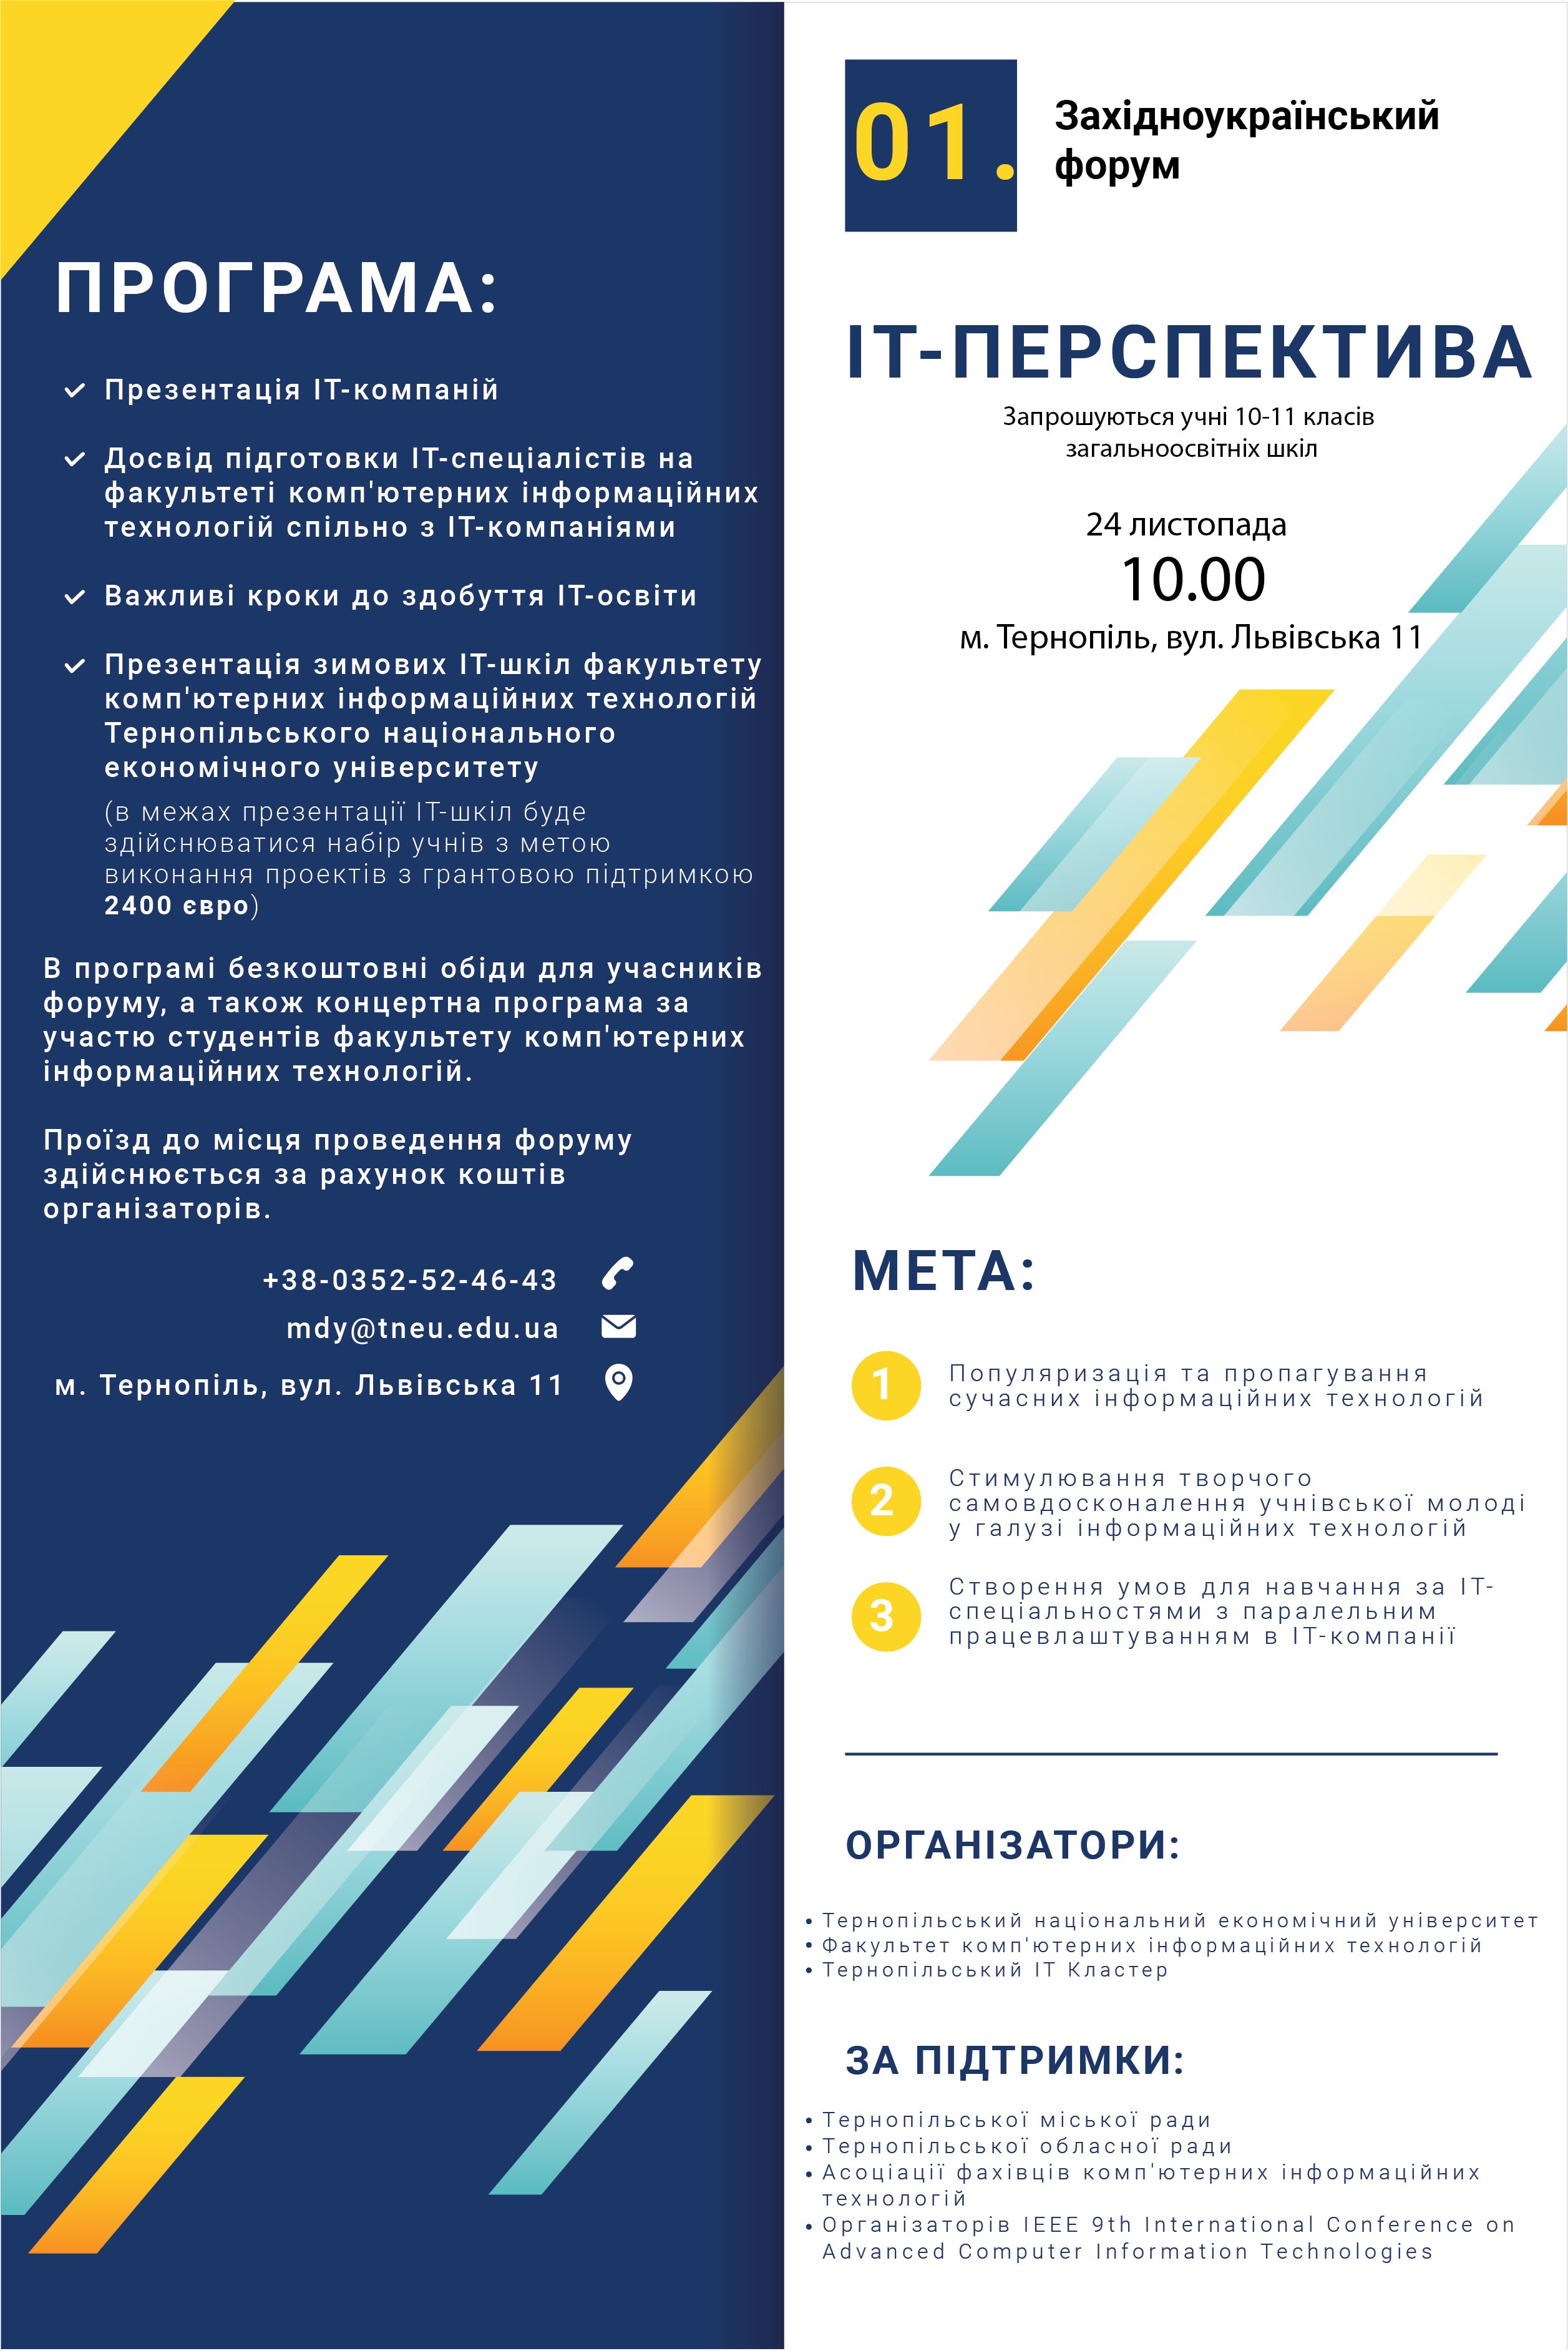 Запрошуємо учнівську молодь взяти участь у І Західноукраїнському форумі «ІТ-перспектива»